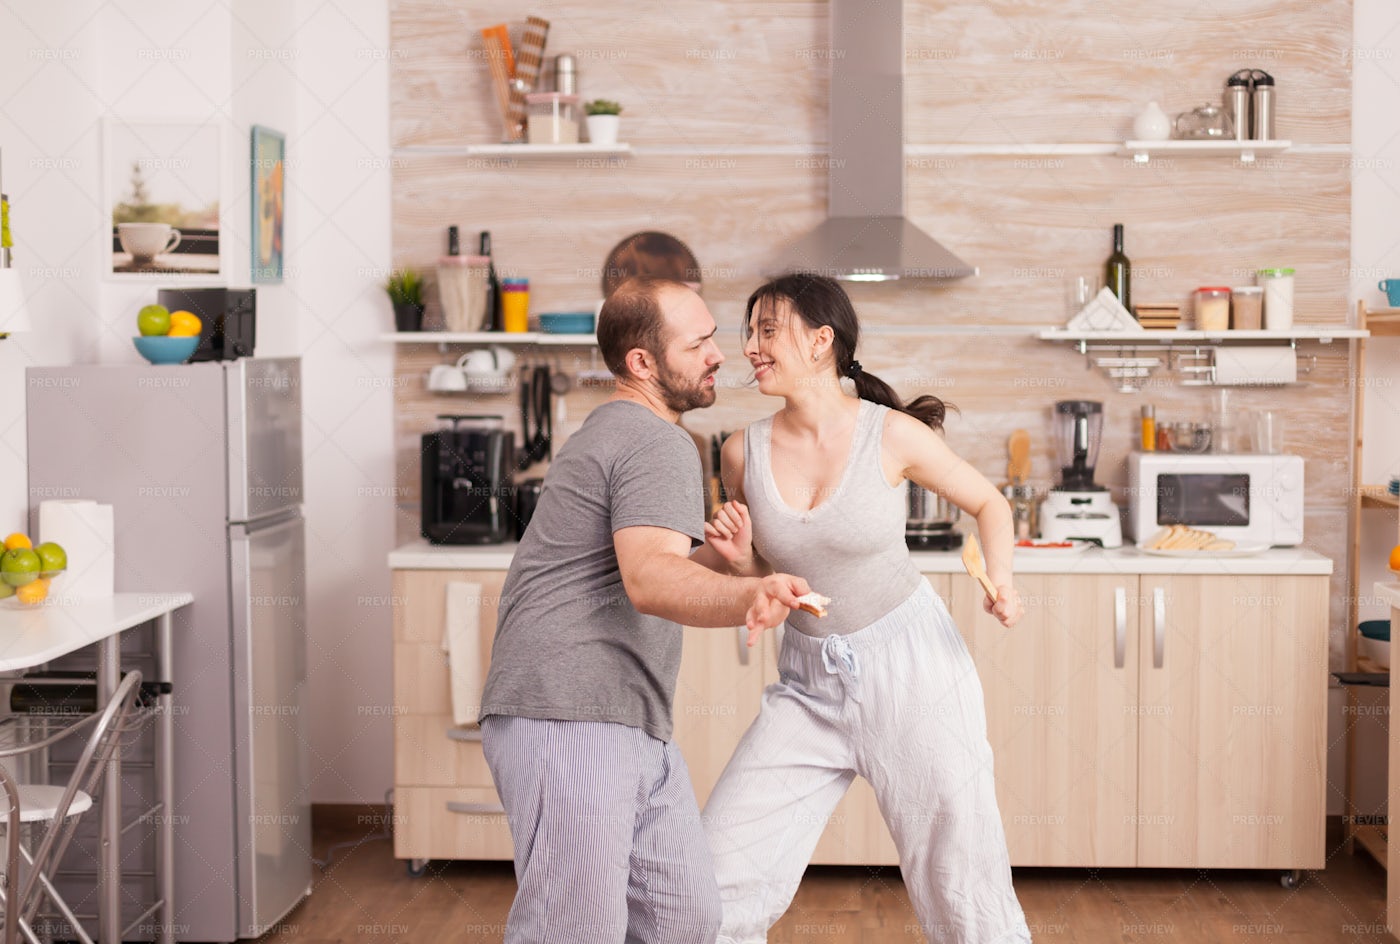 Positive Couple Dancing: Stock Photos